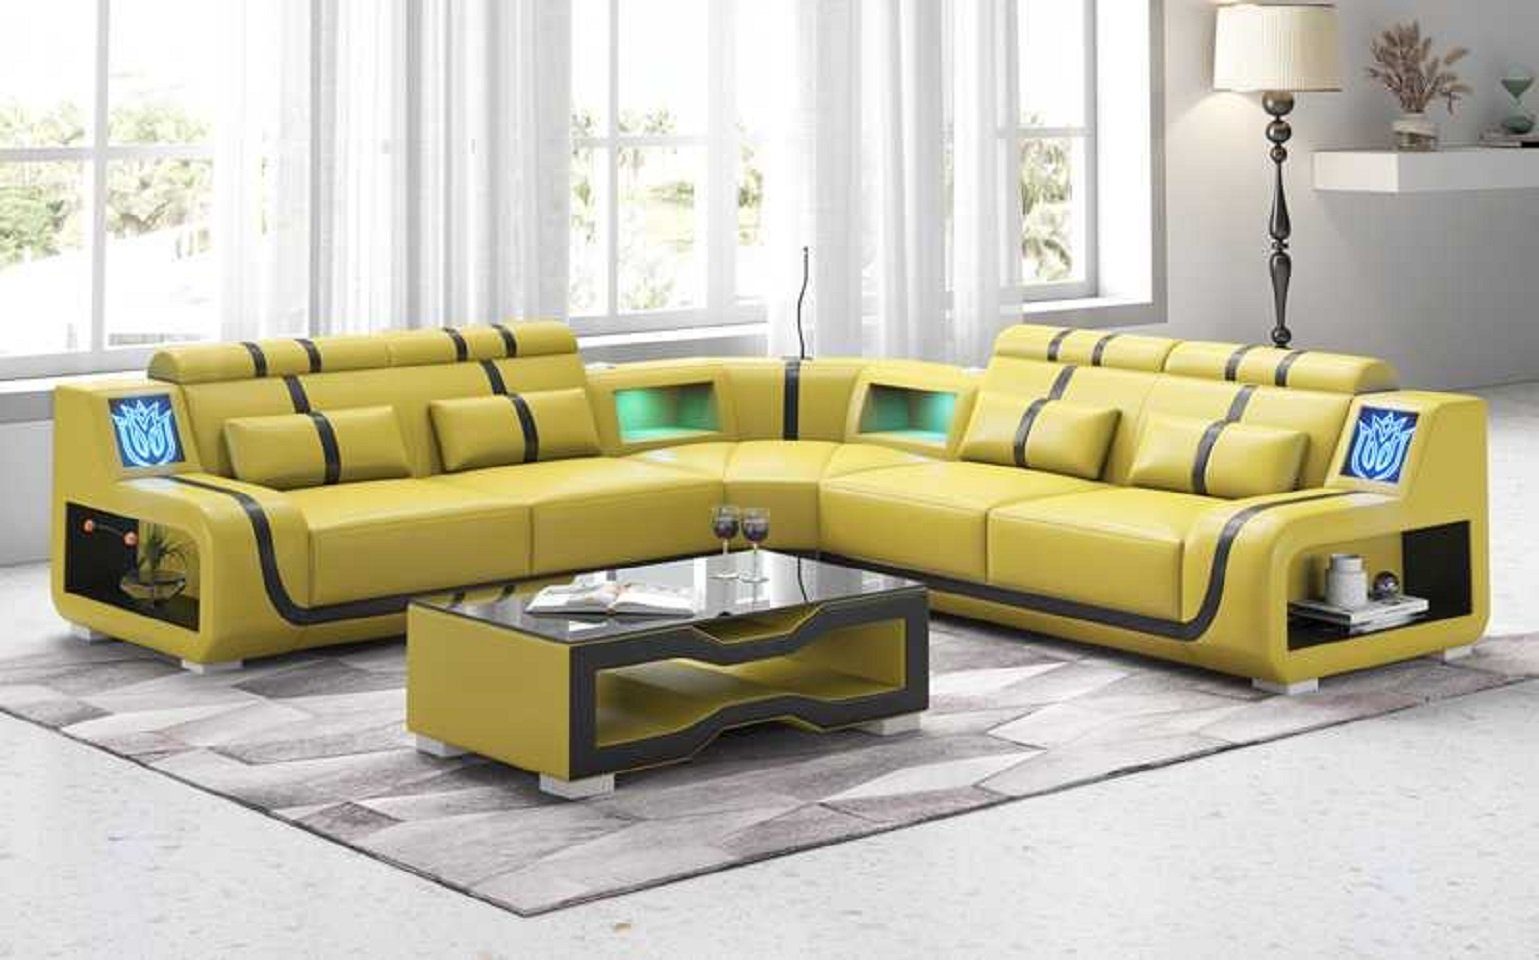 JVmoebel Ecksofa Luxus Couch Ecksofa L Form Modern Kunstleder couchen Sofa Sofas, 3 Teile, Made in Europe Gelb